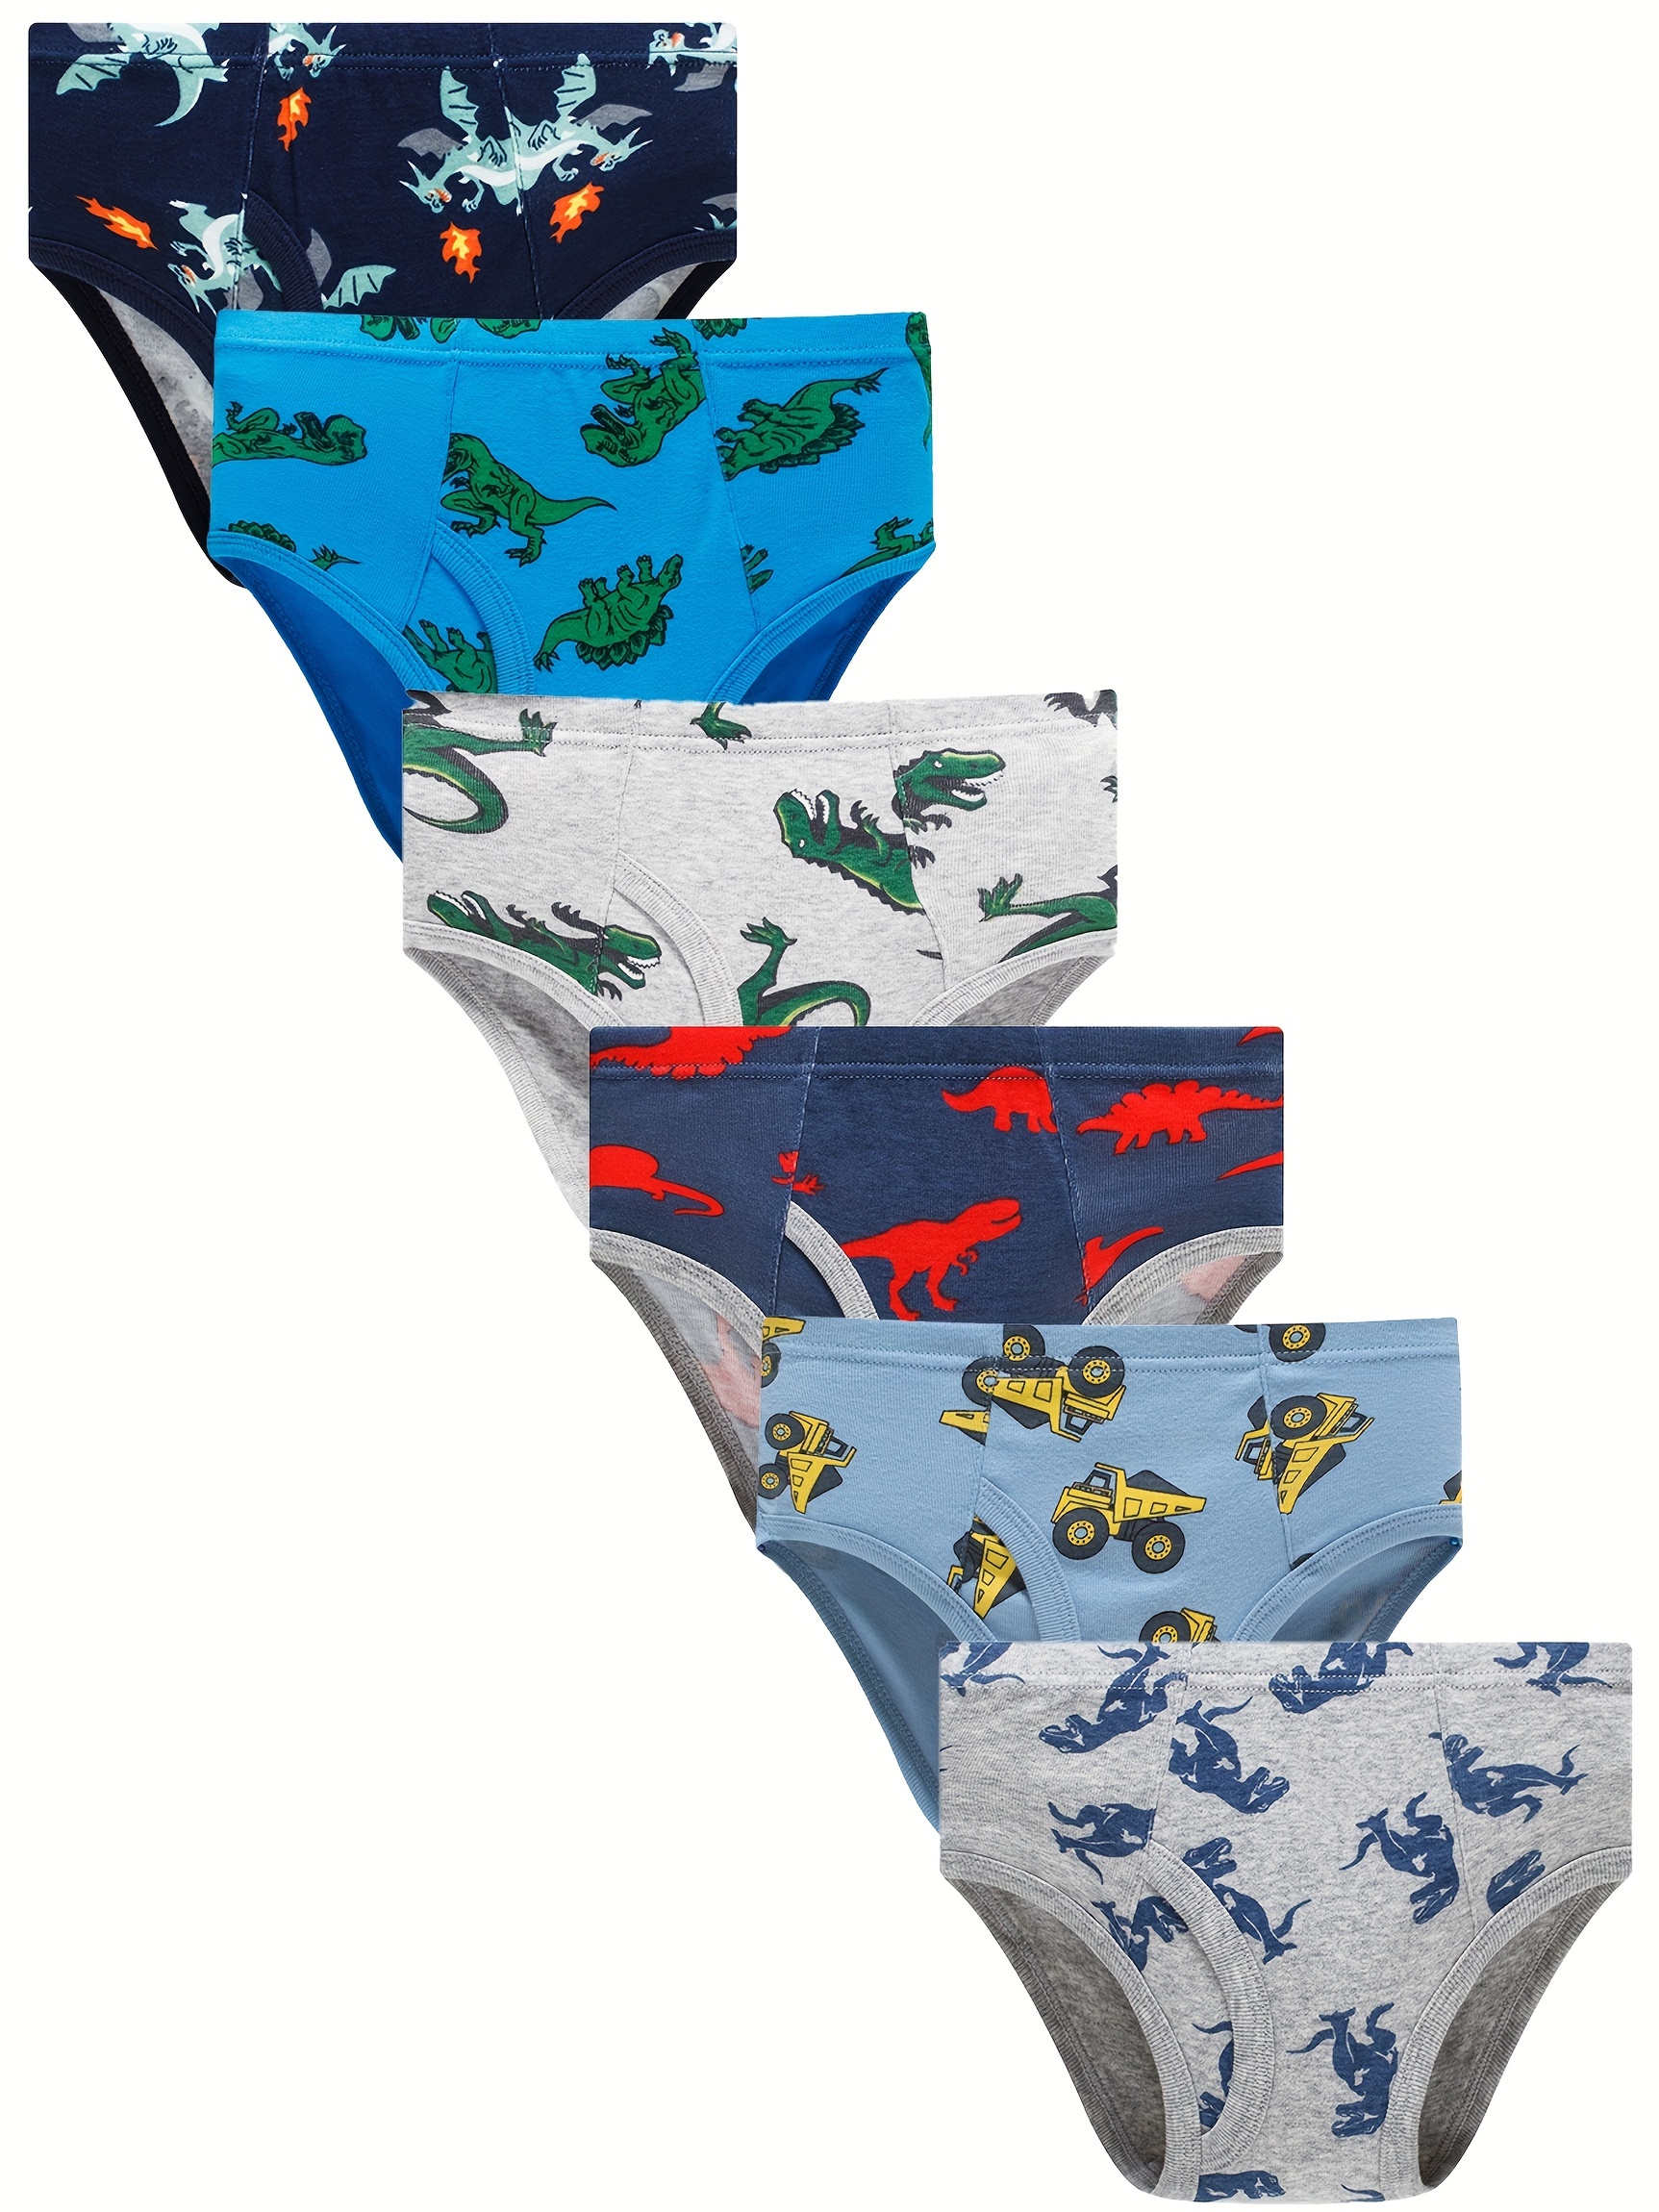 Boys Briefs Soft Dinosaur Truck Little Kids Toddler Underwear(9